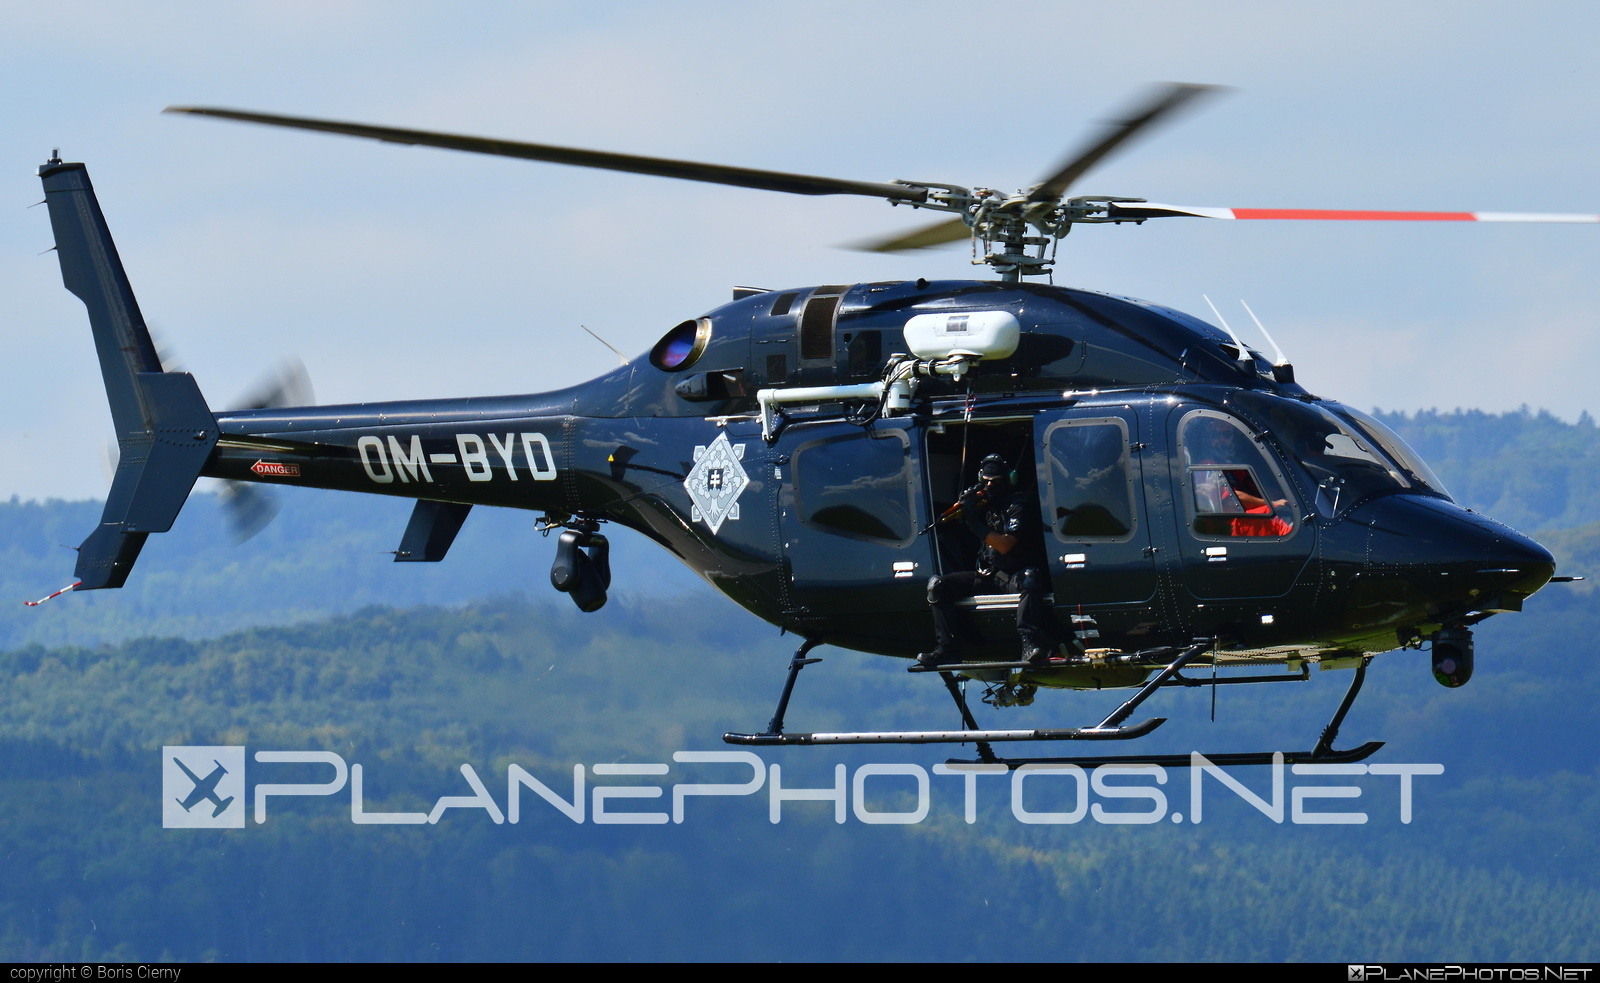 Bell 429 - OM-BYD operated by Letecký útvar MV SR (Slovak Government Flying Service) #SlovakGovernmentFlyingService #bell #bell429 #bellhelicopters #leteckyutvarMVSR